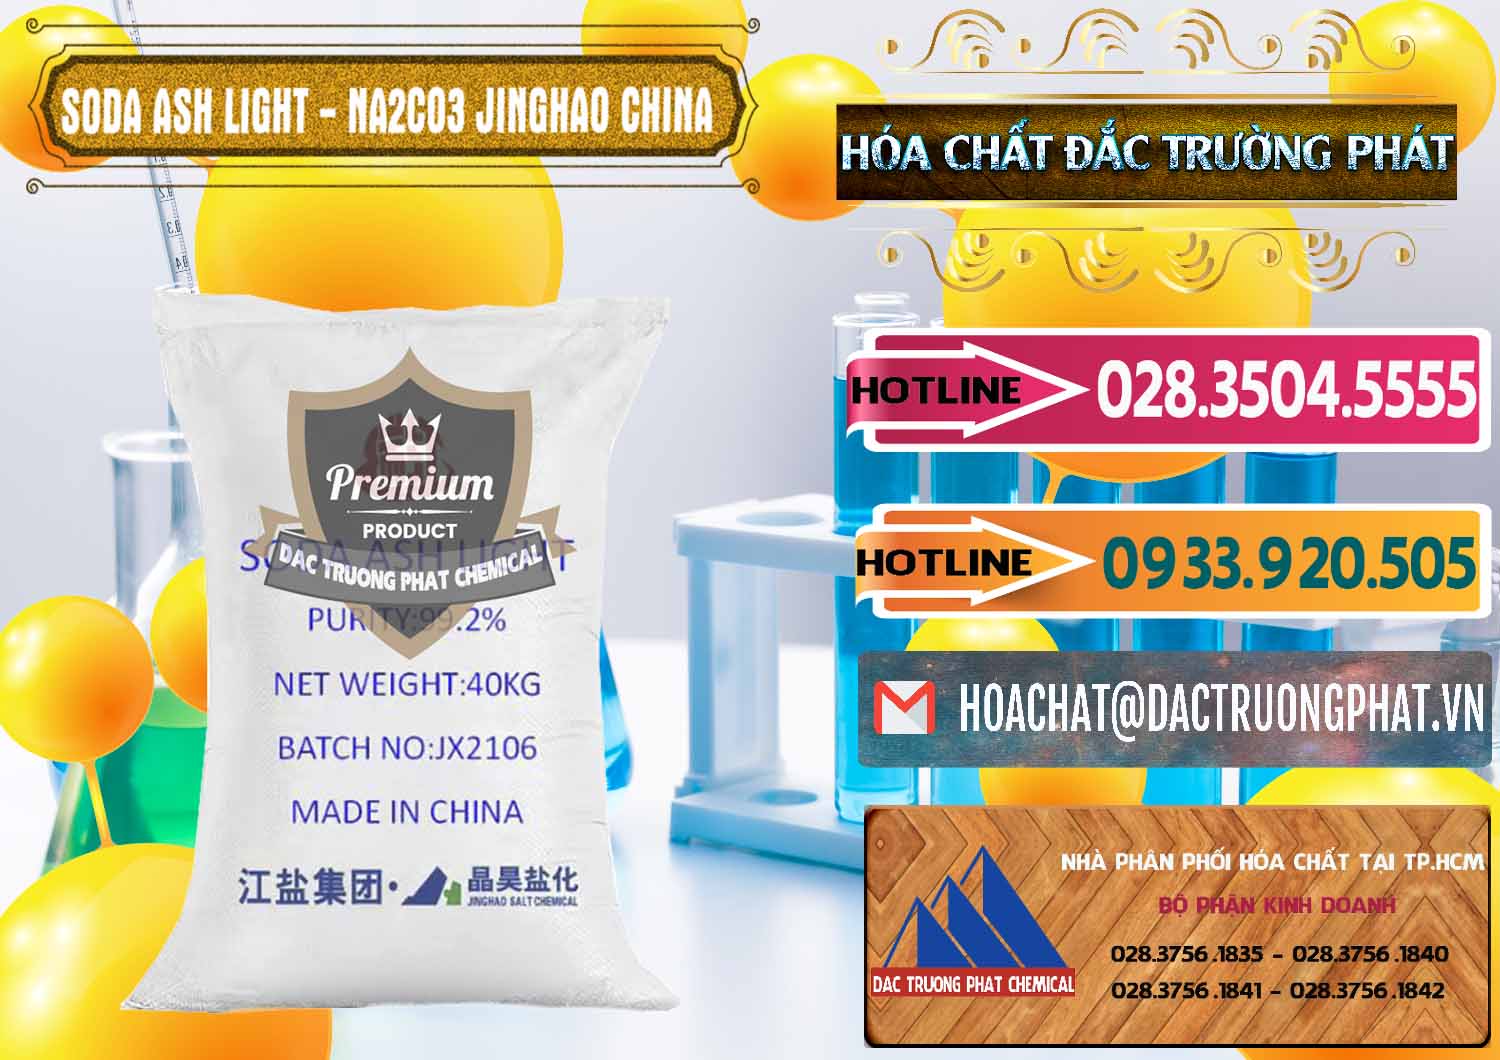 Đơn vị chuyên bán _ phân phối Soda Ash Light - NA2CO3 Jinghao Trung Quốc China - 0339 - Công ty nhập khẩu - cung cấp hóa chất tại TP.HCM - dactruongphat.vn